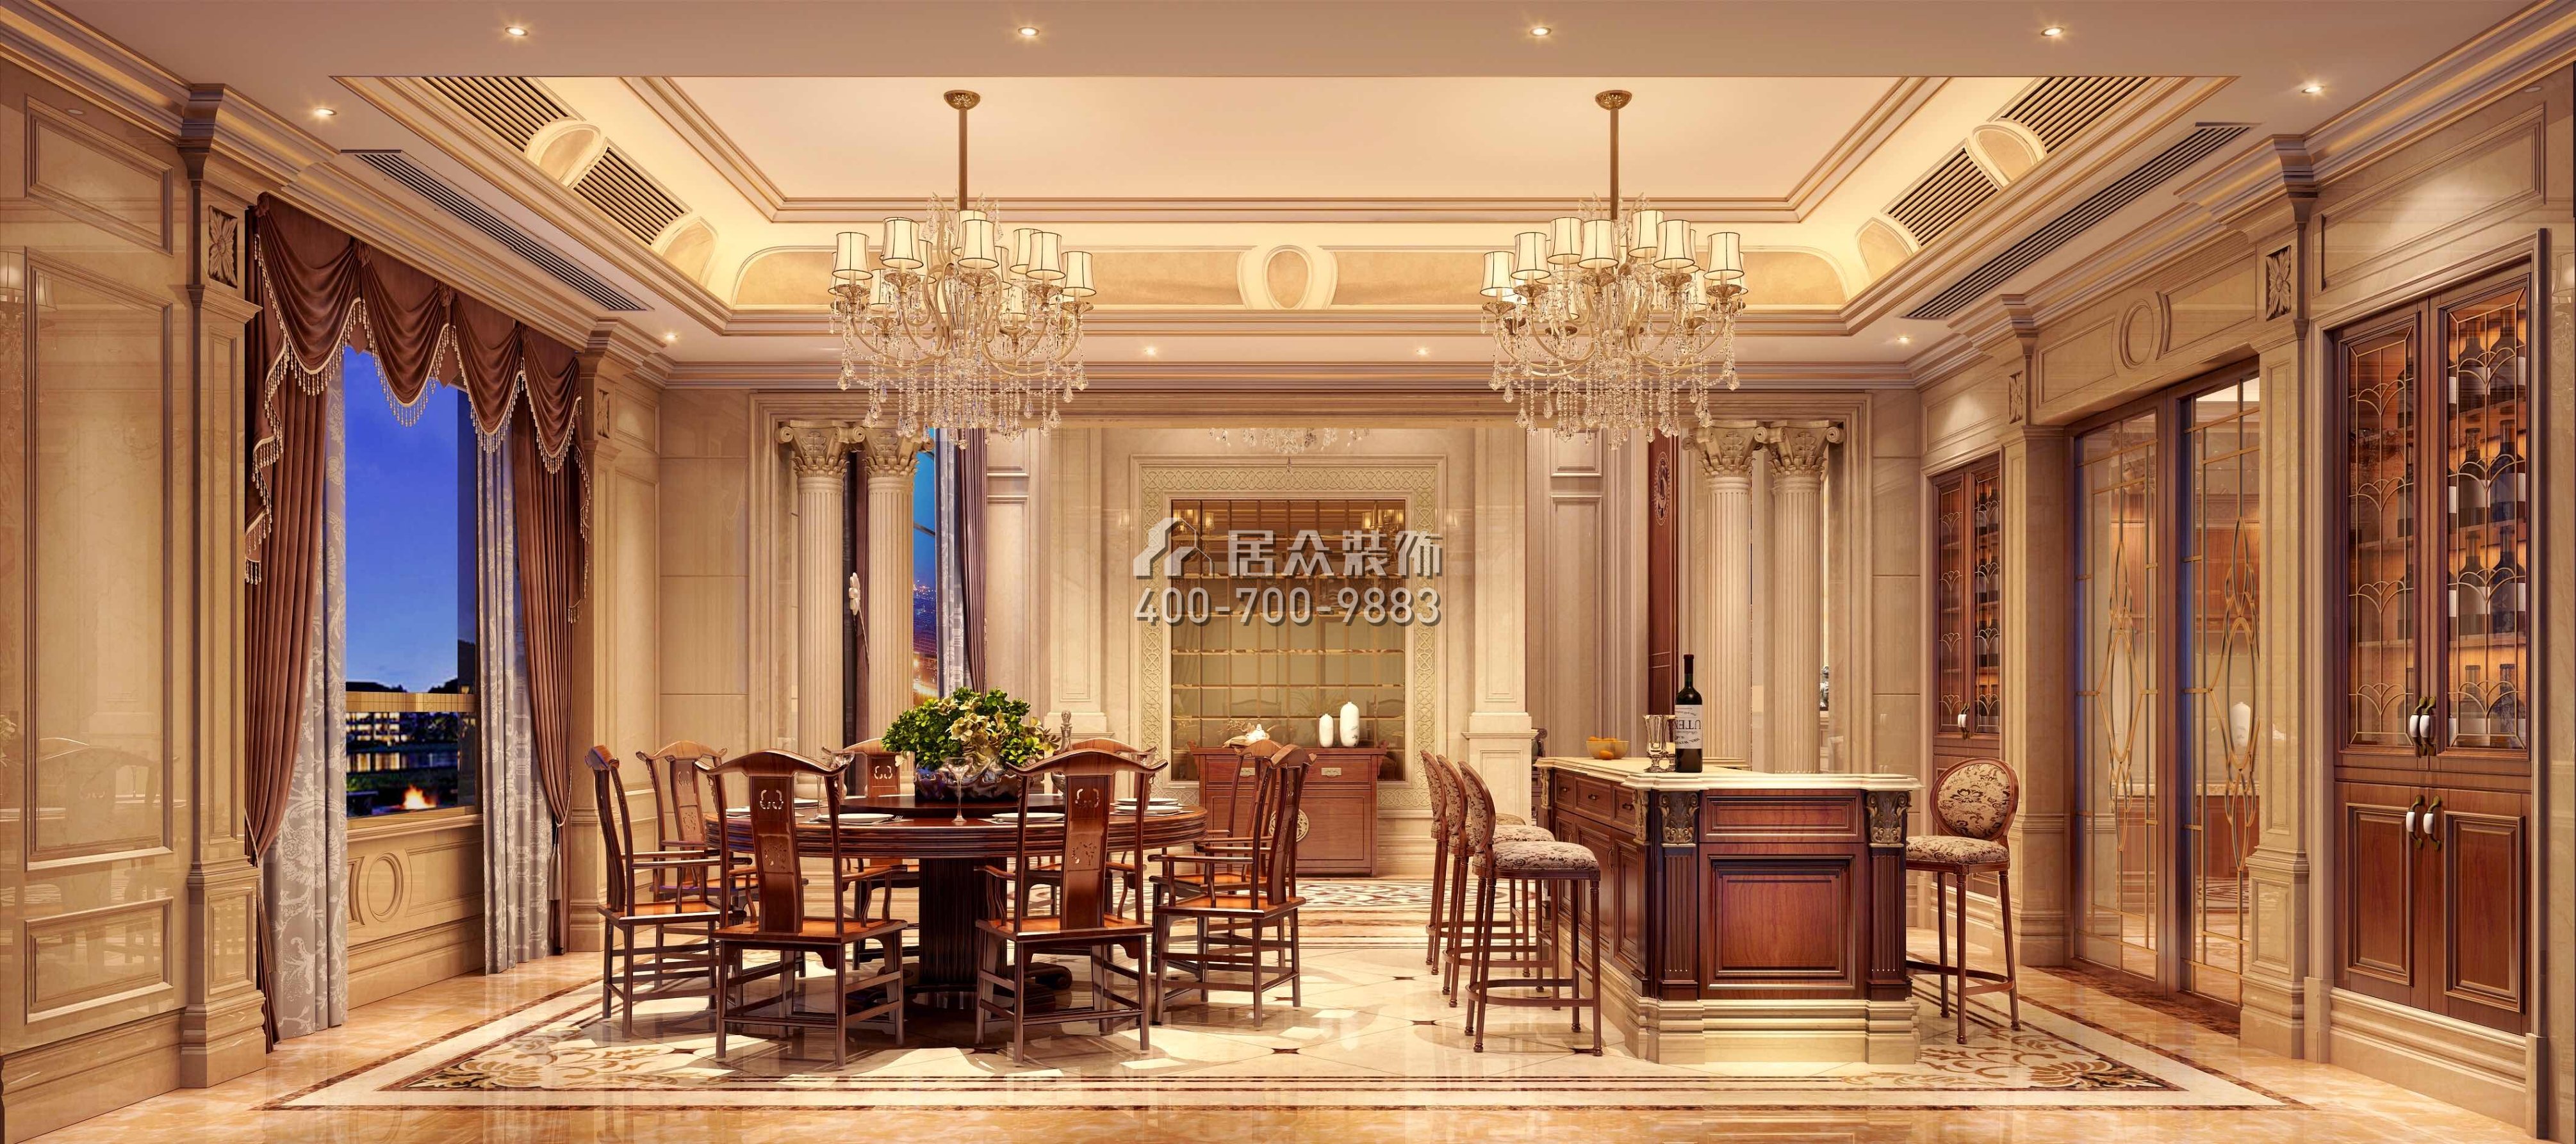 東江明珠花園600平方米歐式風格別墅戶型餐廳裝修效果圖